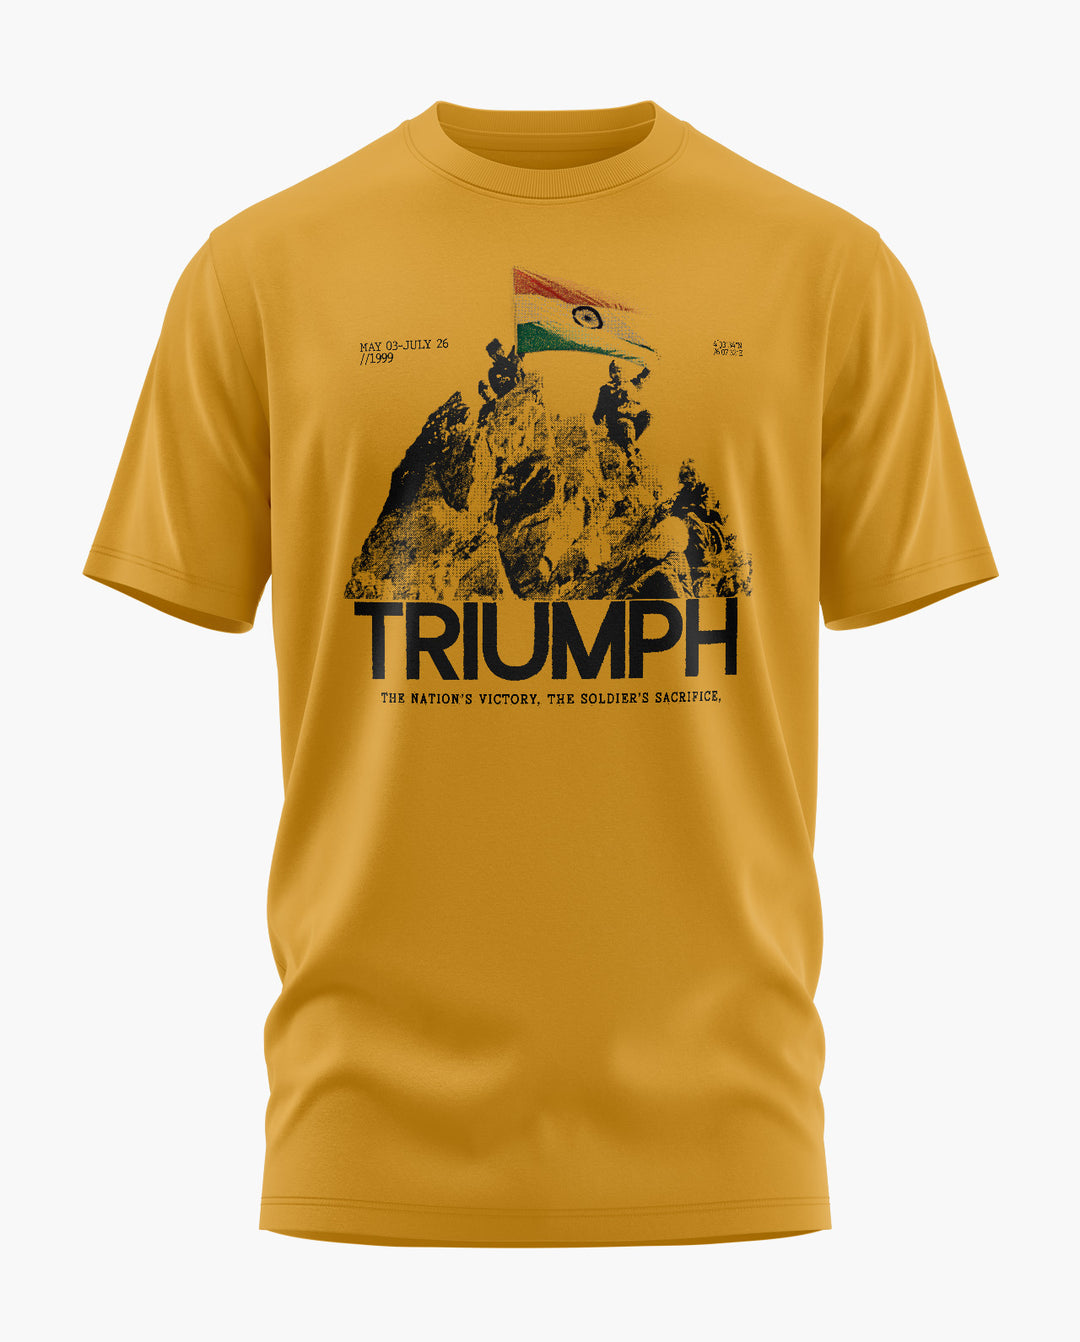 TRIUMPH 1999 T-Shirt